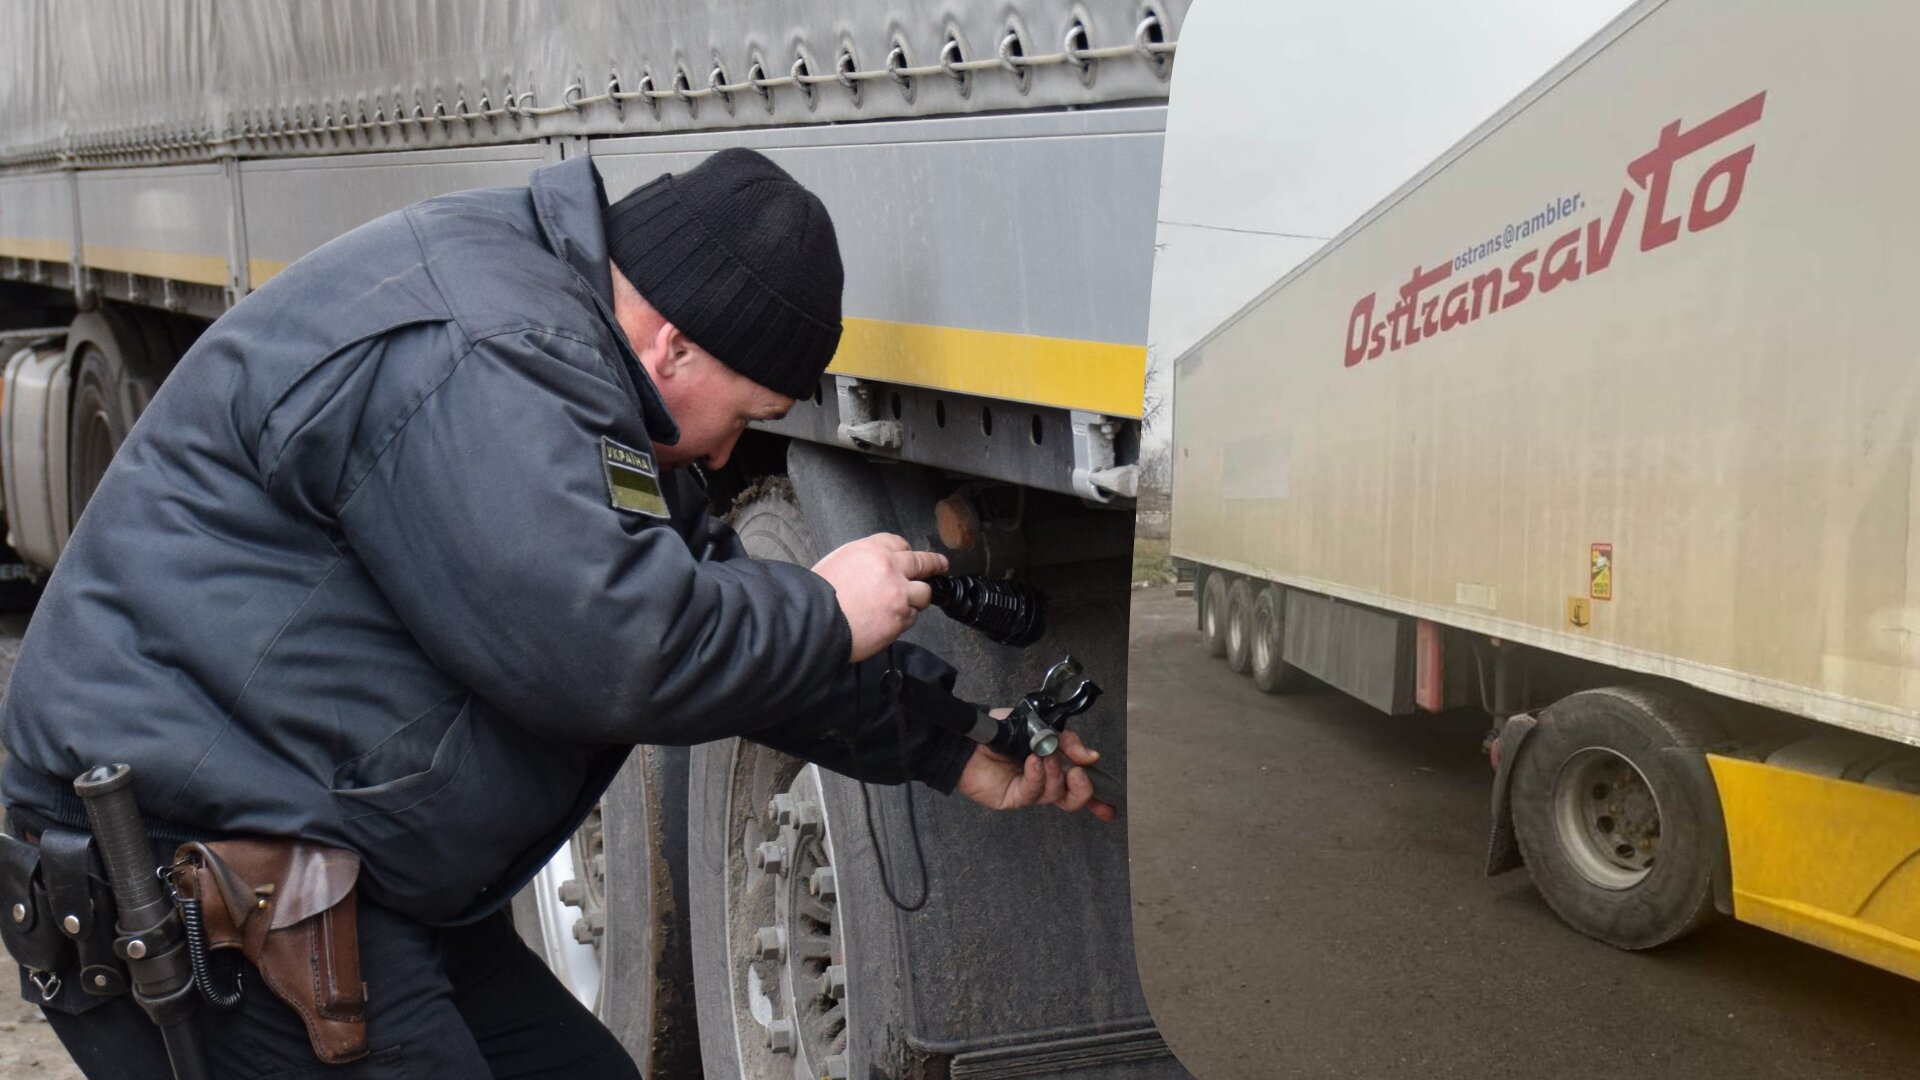 На Закарпатті прикордонники Мукачівського та Чопського прикордонних загонів виявили вантажівки з ознаками втручання у нанесення ідентифікаційних номерів кузова.

